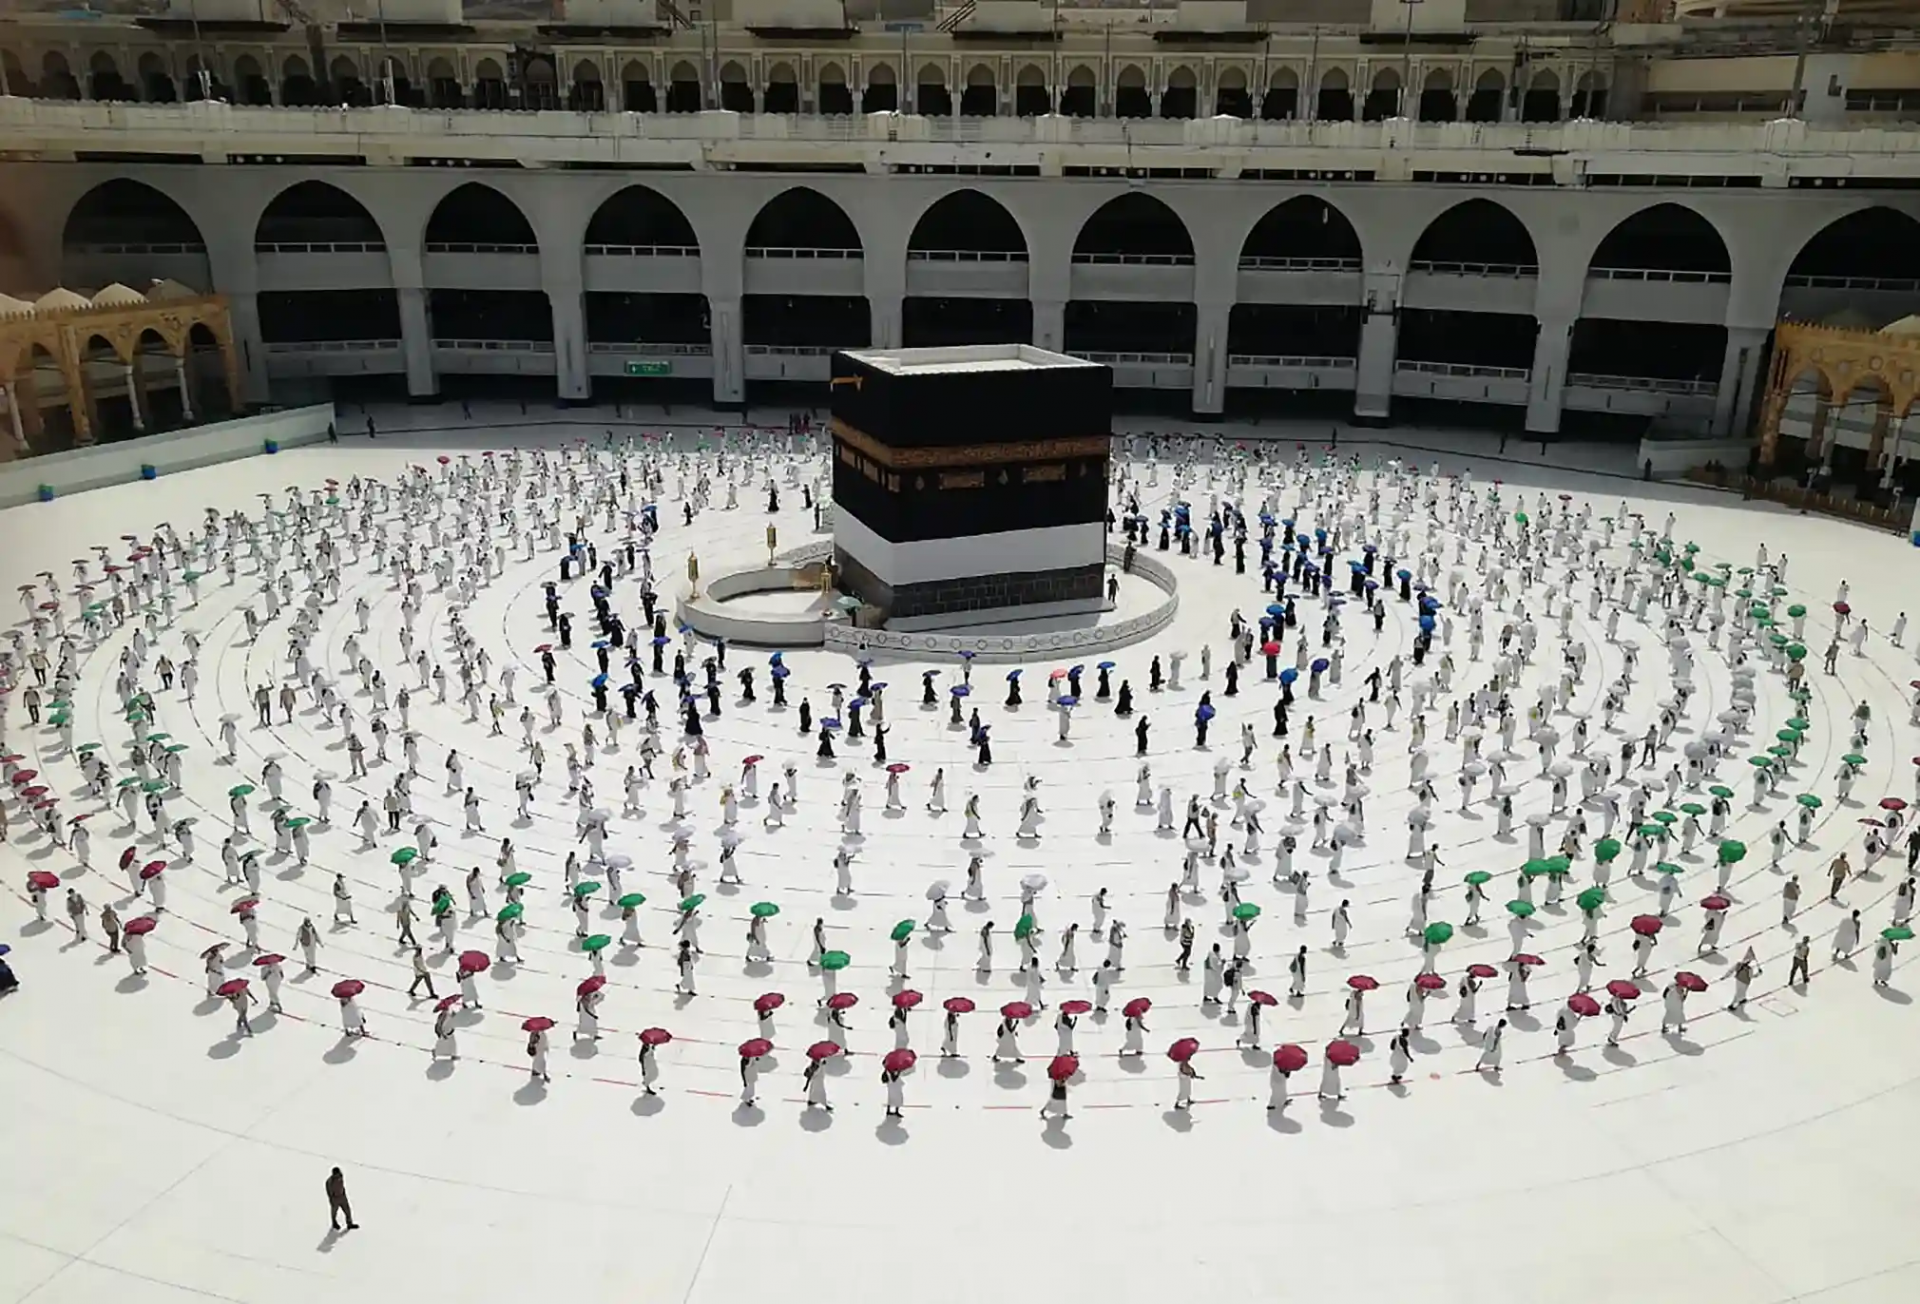 Hajj pilgrimage went downsized due to COVID-19